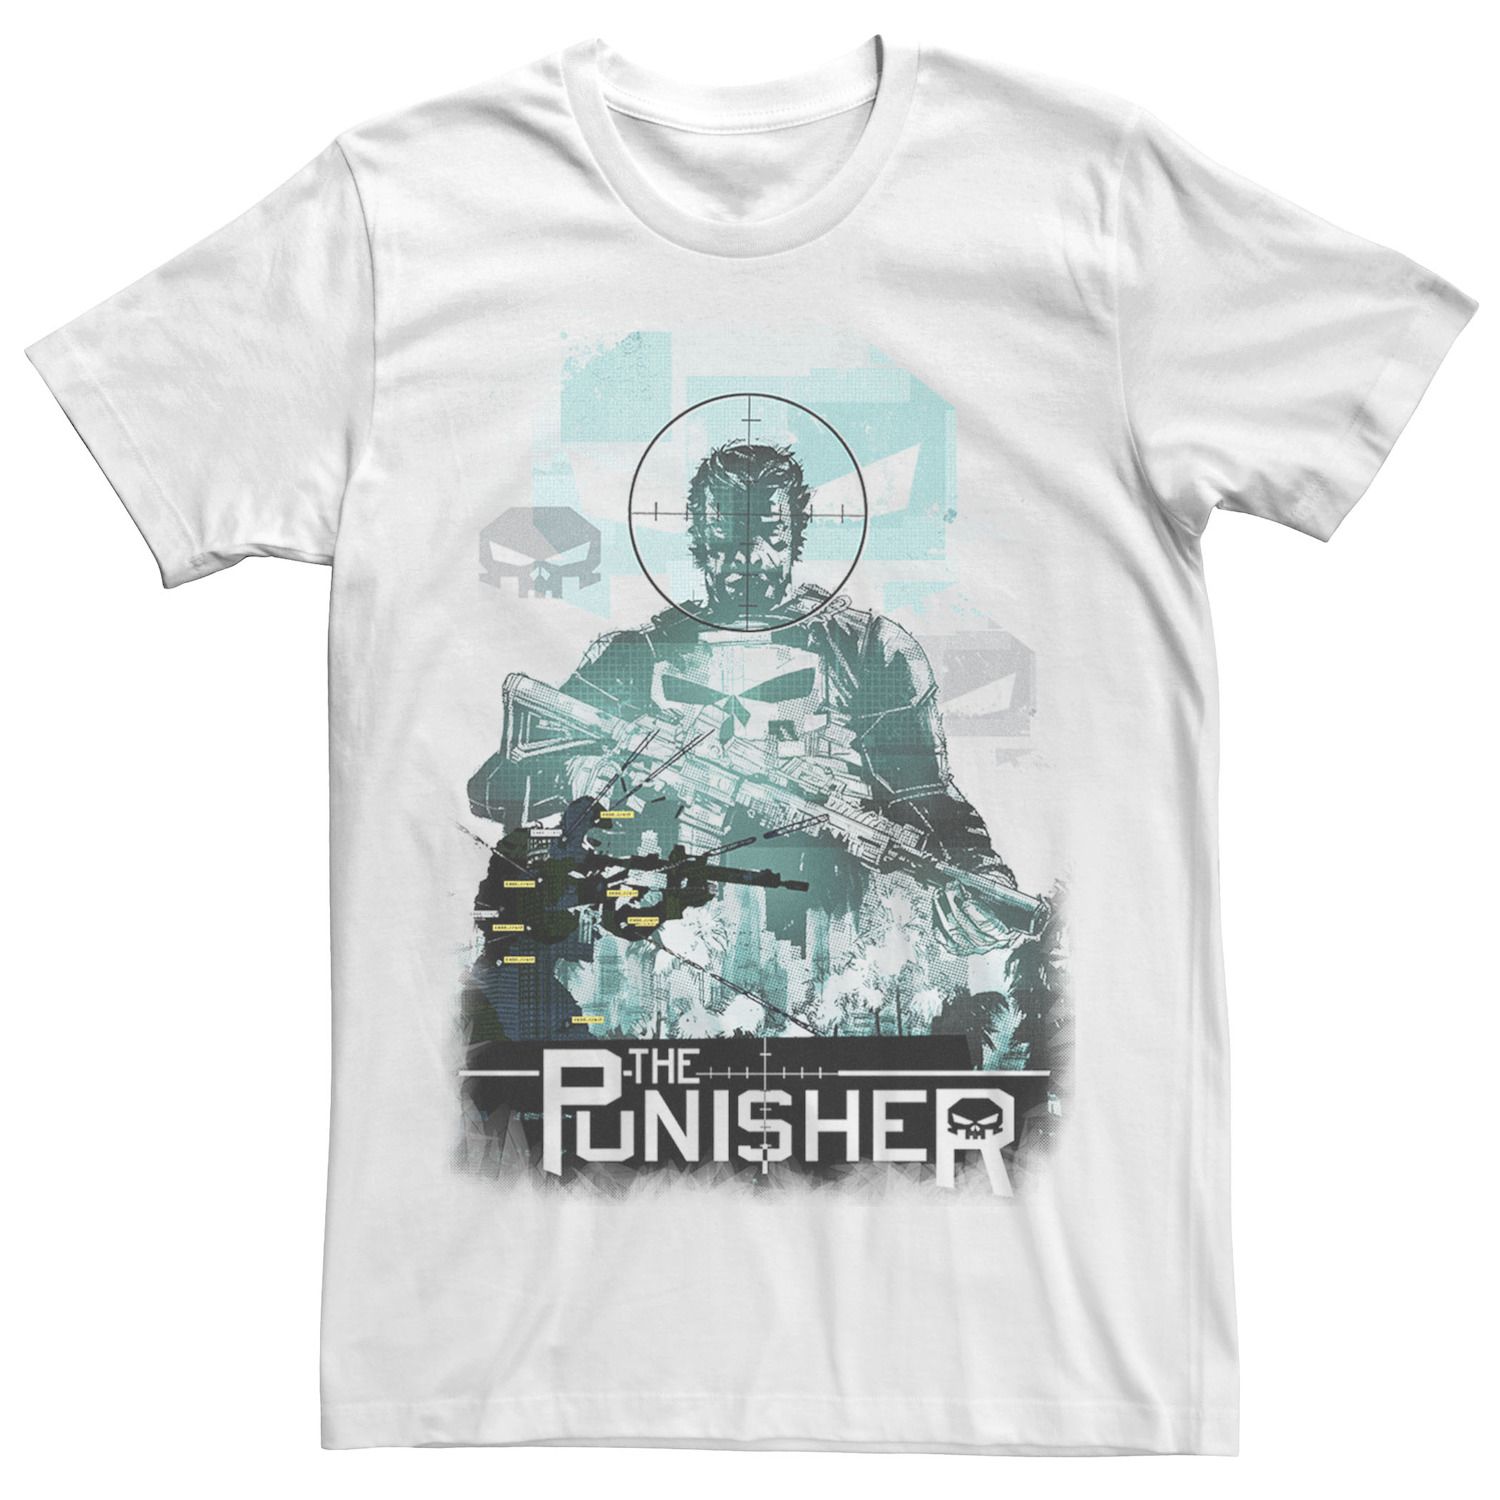 Мужская футболка с портретным рисунком The Punisher Crosshairs Marvel футболка мужская marvel punisher s